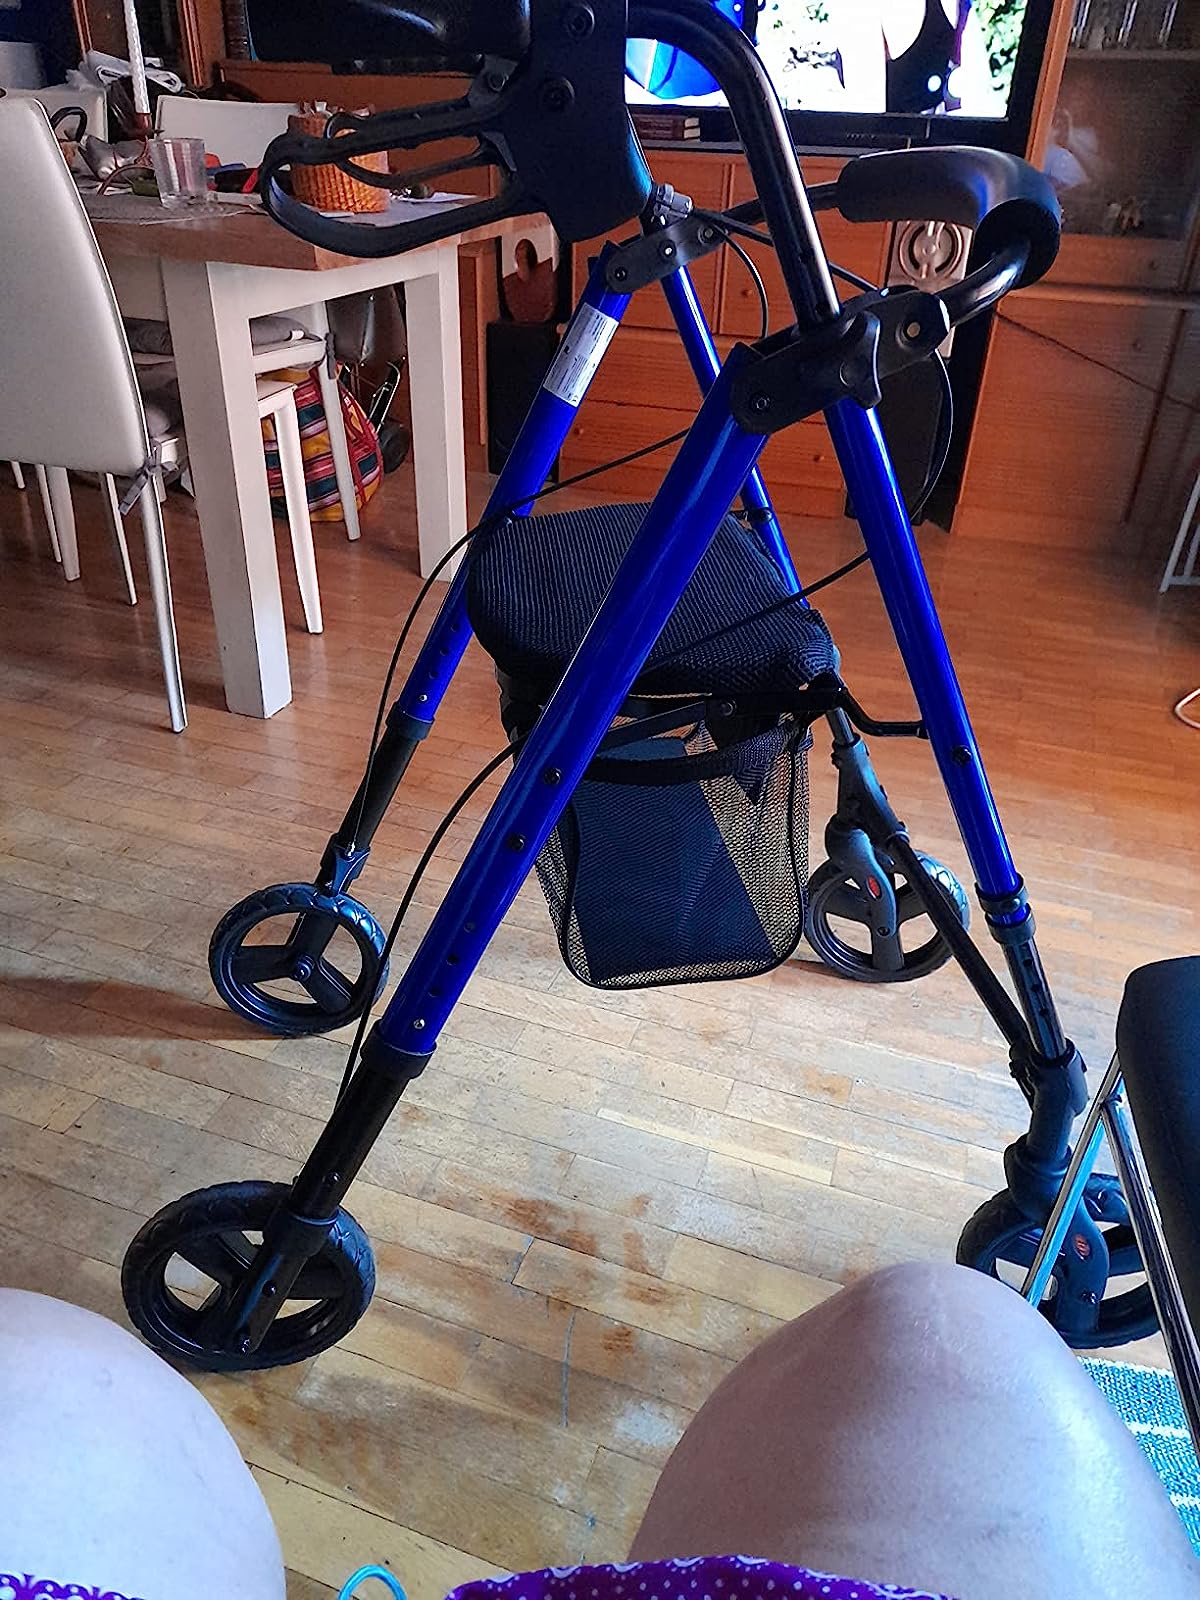 Opiniones y reseñas de usuarios sobre los andadores silla de ruedas.